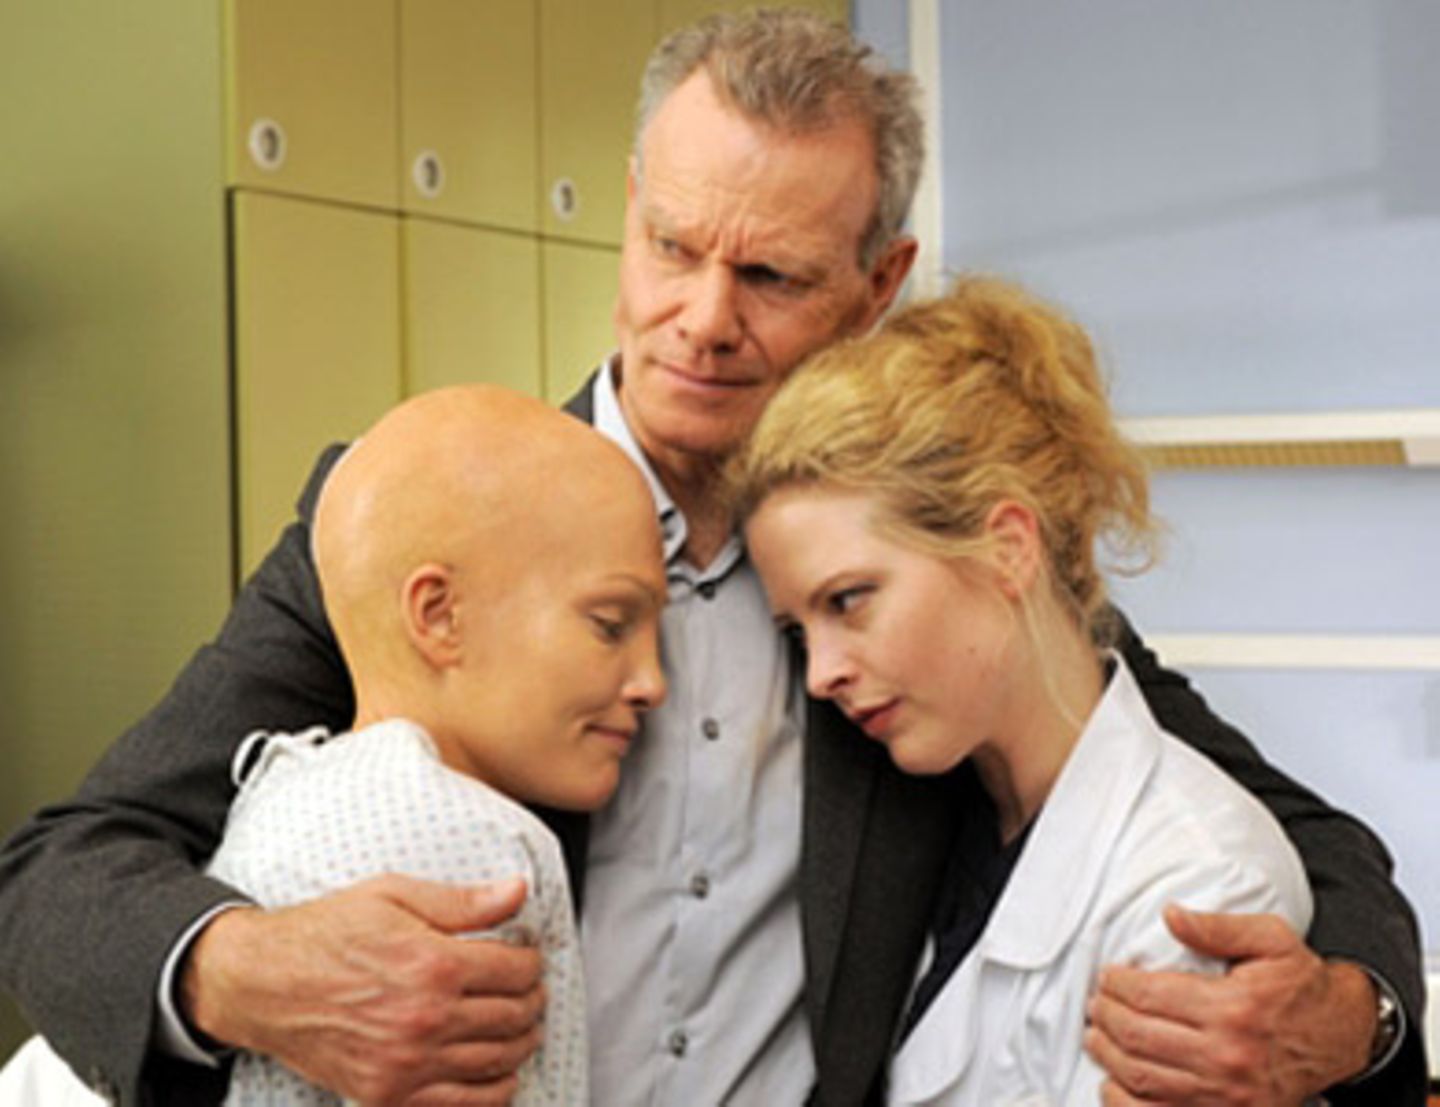 Susannes Vater (Norbert Braun) hält seine leukämiekranke Tochter (Tanja Wenzel, li.) und die behandelnde Ärztin Gretchen Haase (Diana Amft) in den Armen.